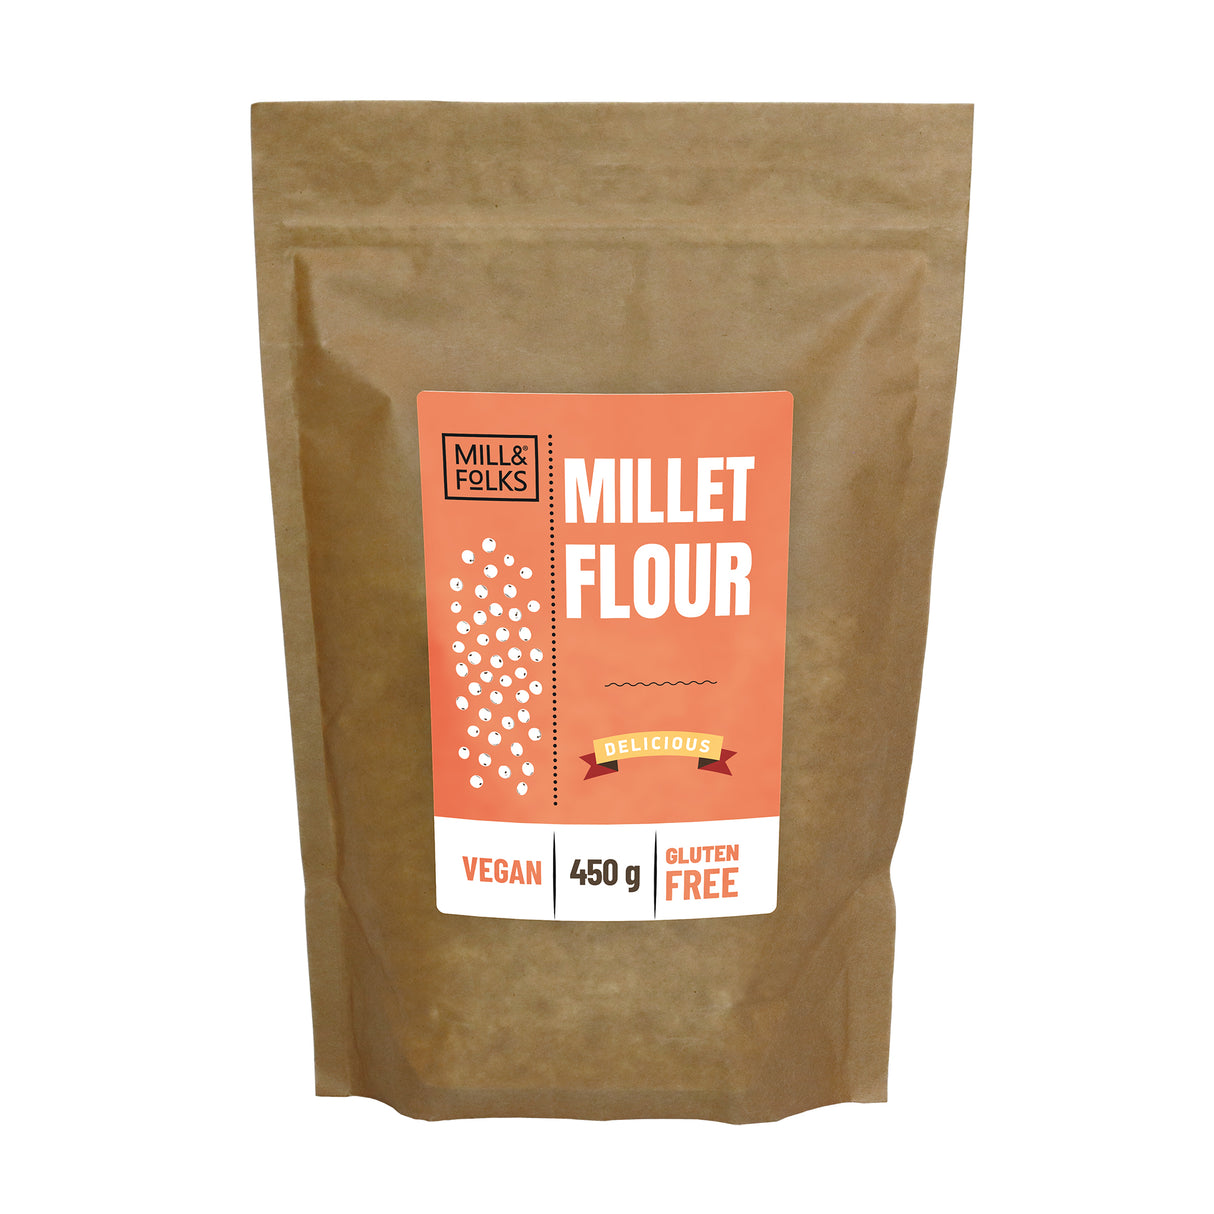 Millet flour 450g